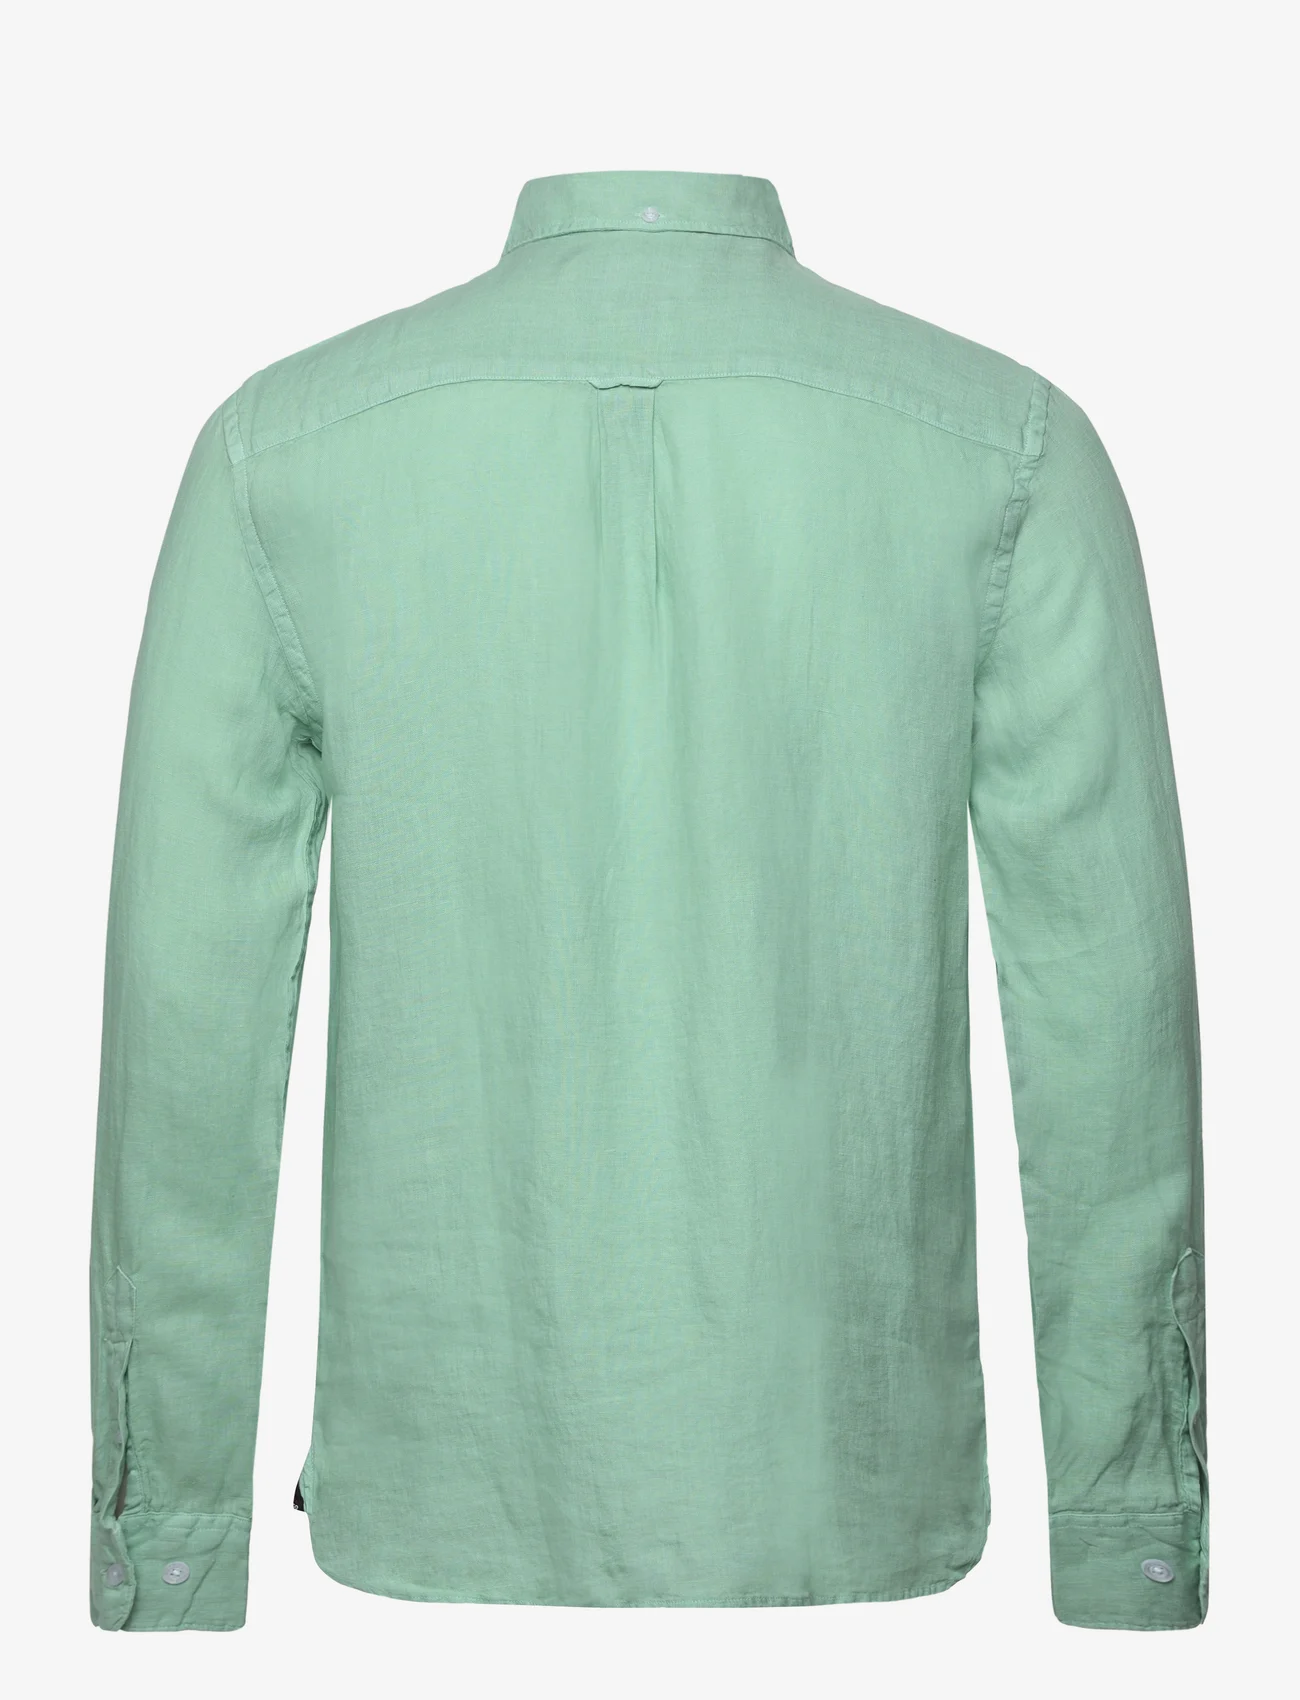 Sebago - Linen Shirt - hørskjorter - mint - 1